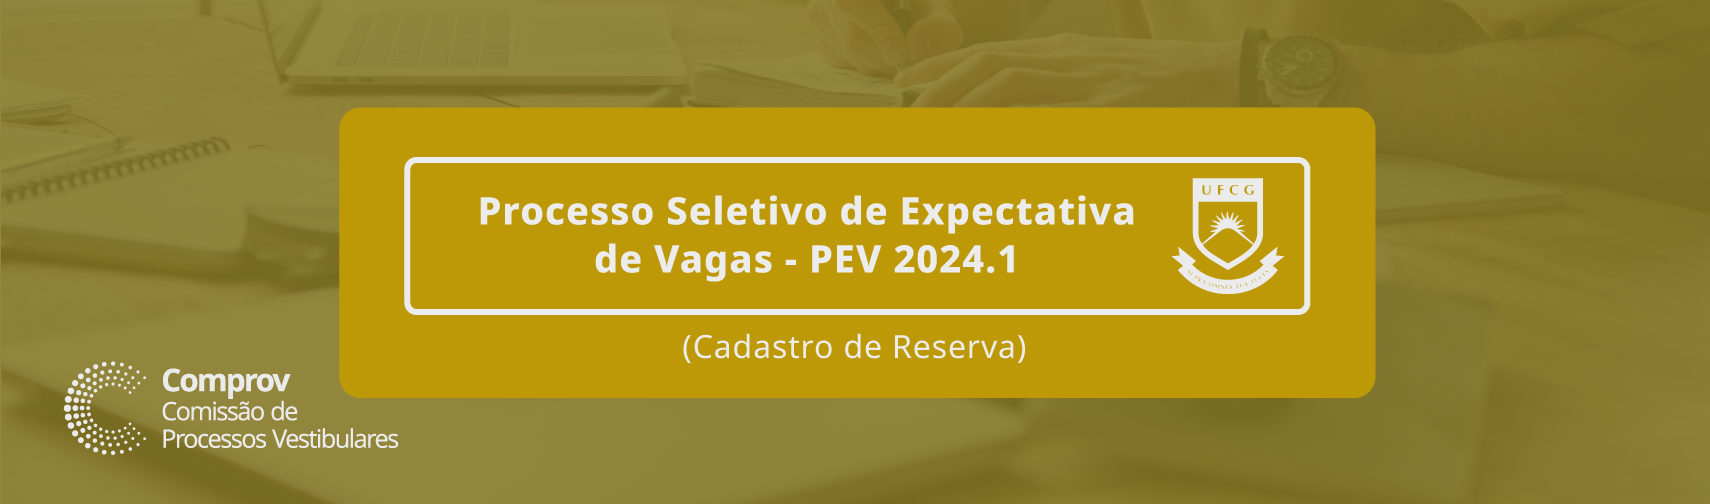 Processo Seletivo de Expectativa de Vagas PSEV 2024.1